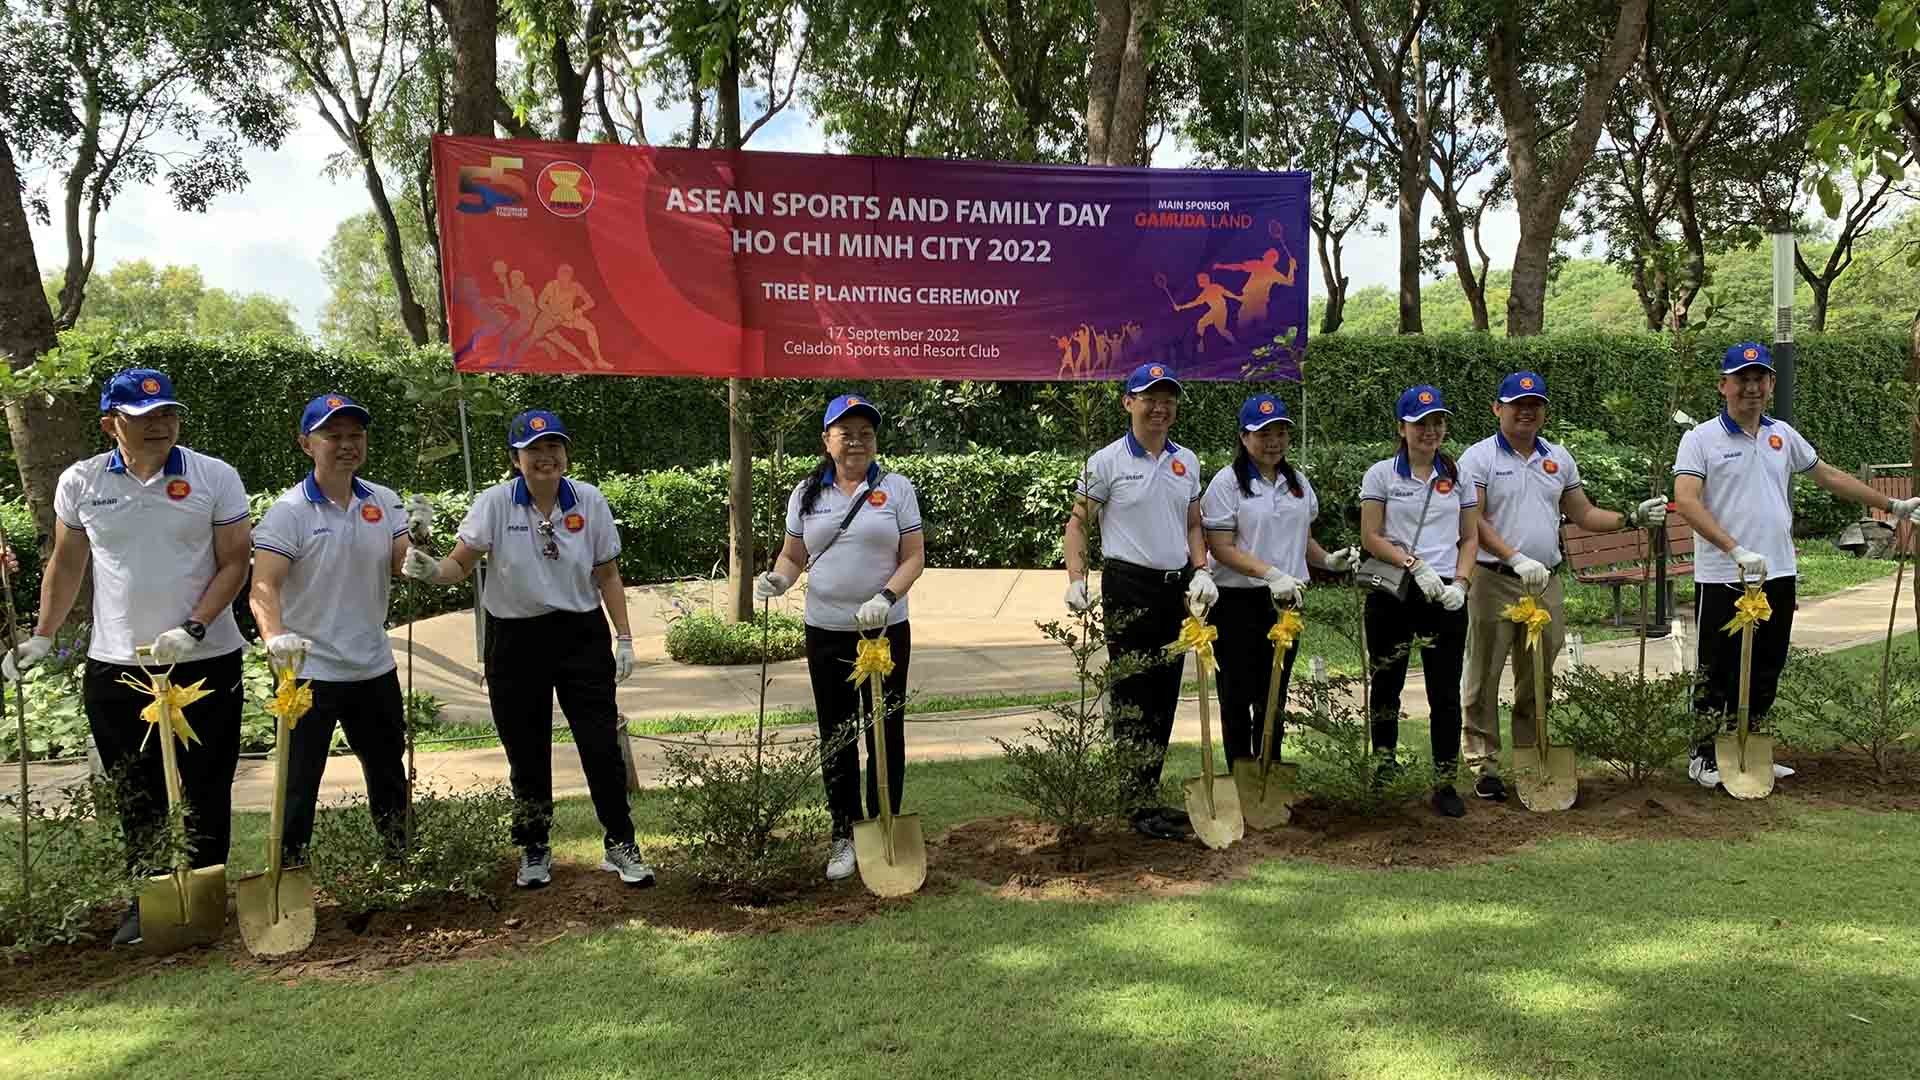 Ngày thể thao và gia đình ASEAN 2022 tại TP. Hồ Chí Minh